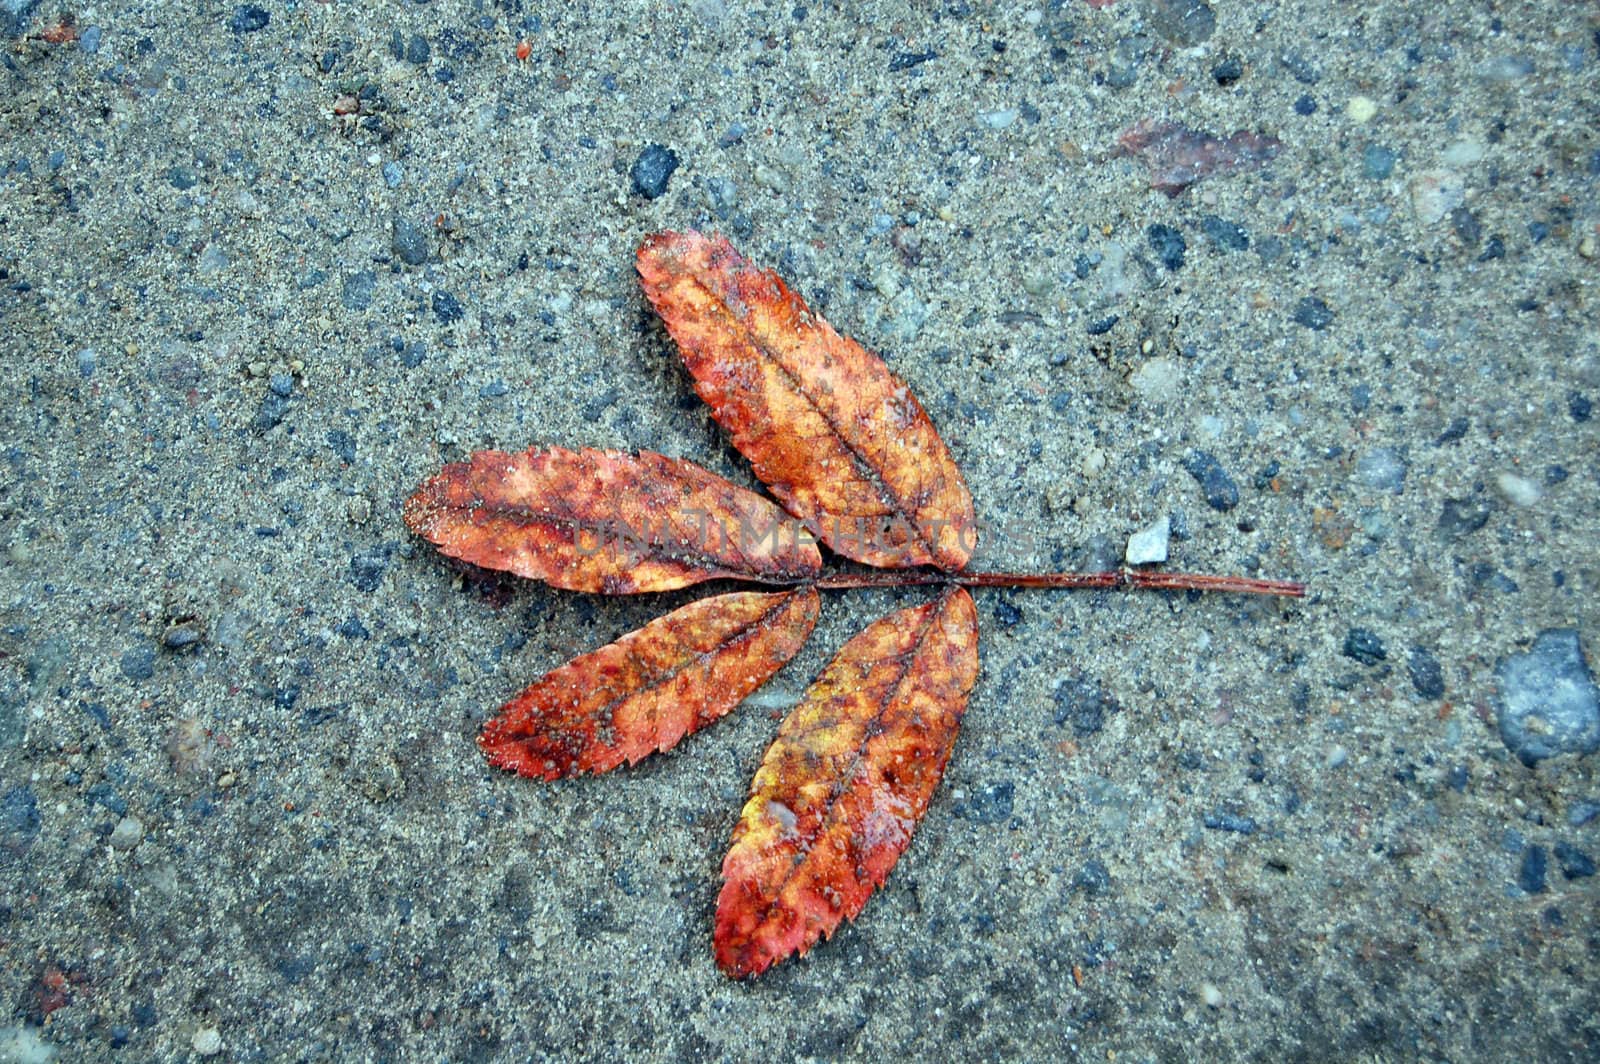 Leaf on the ground